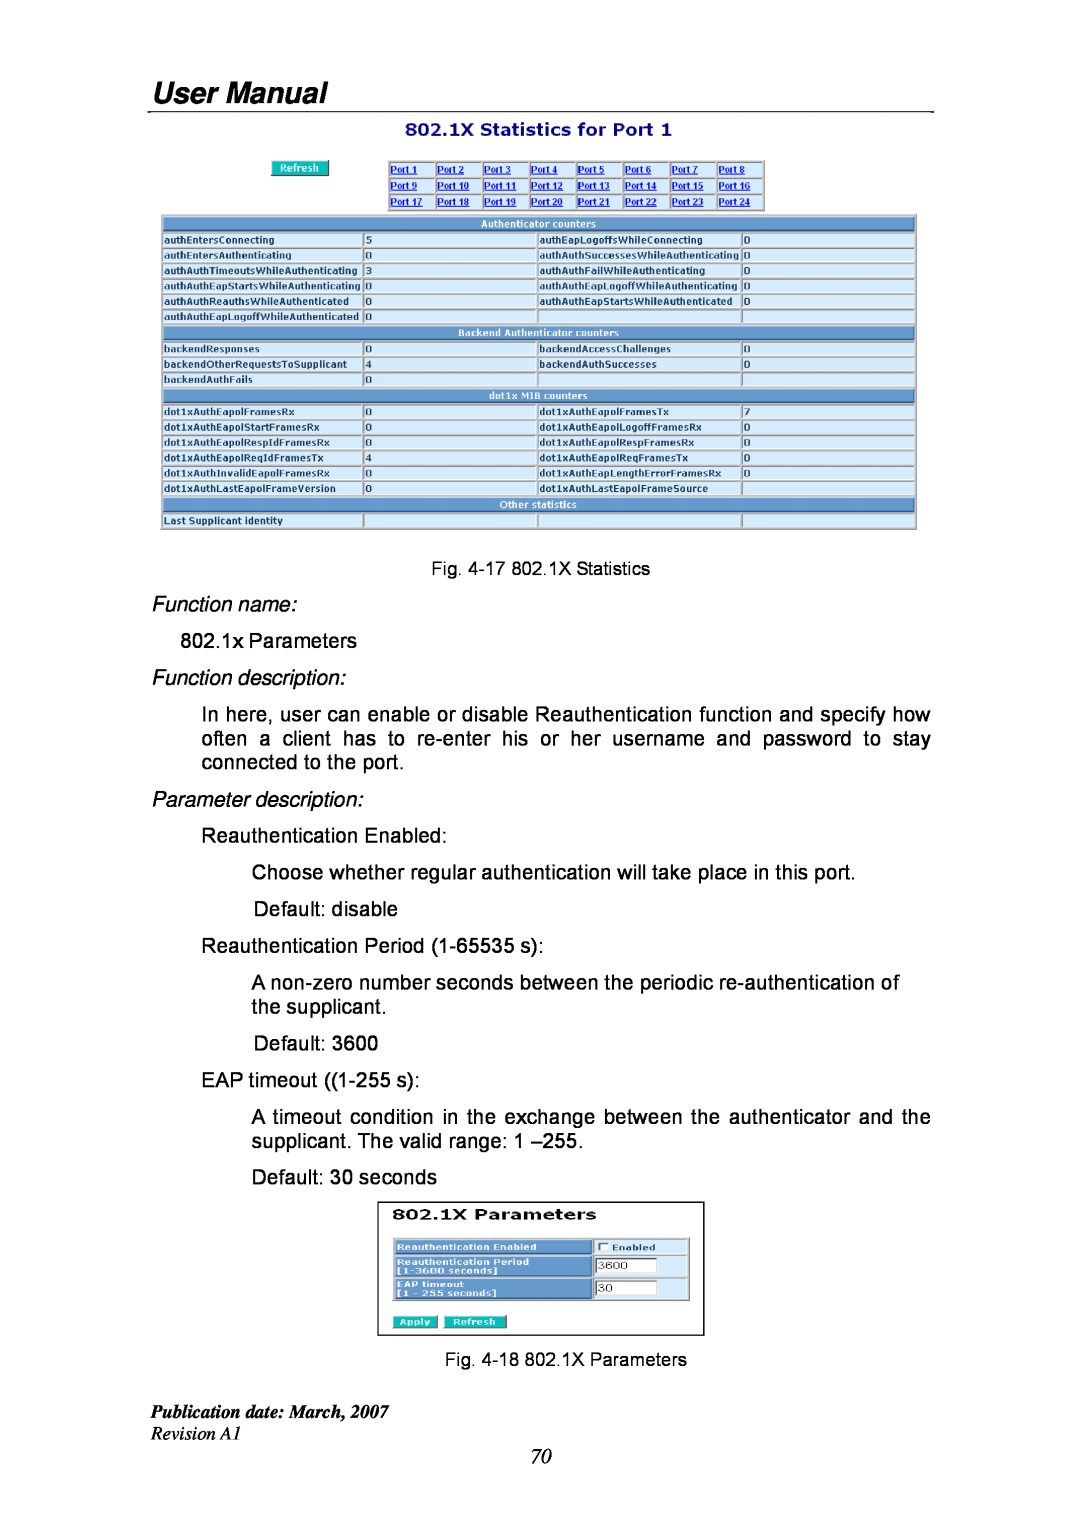 Ruby Tech GS-1224L manual User Manual, Function name, 802.1x Parameters, Function description, Parameter description 